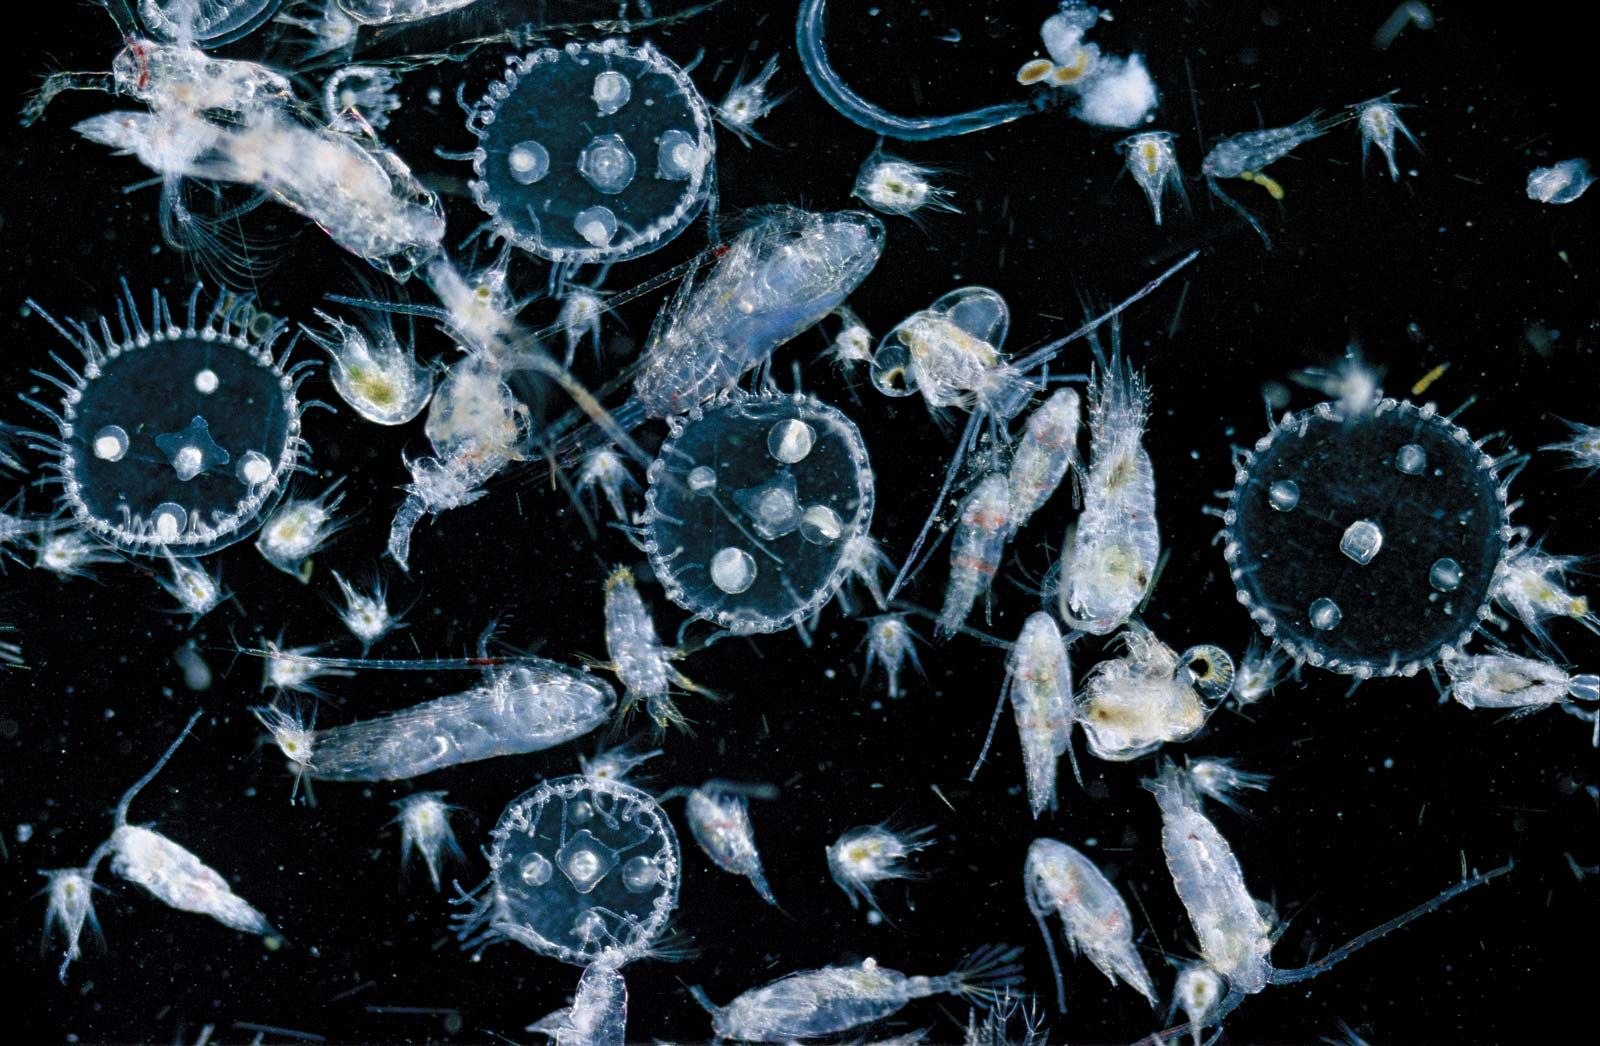 Что такое планктон 5 класс